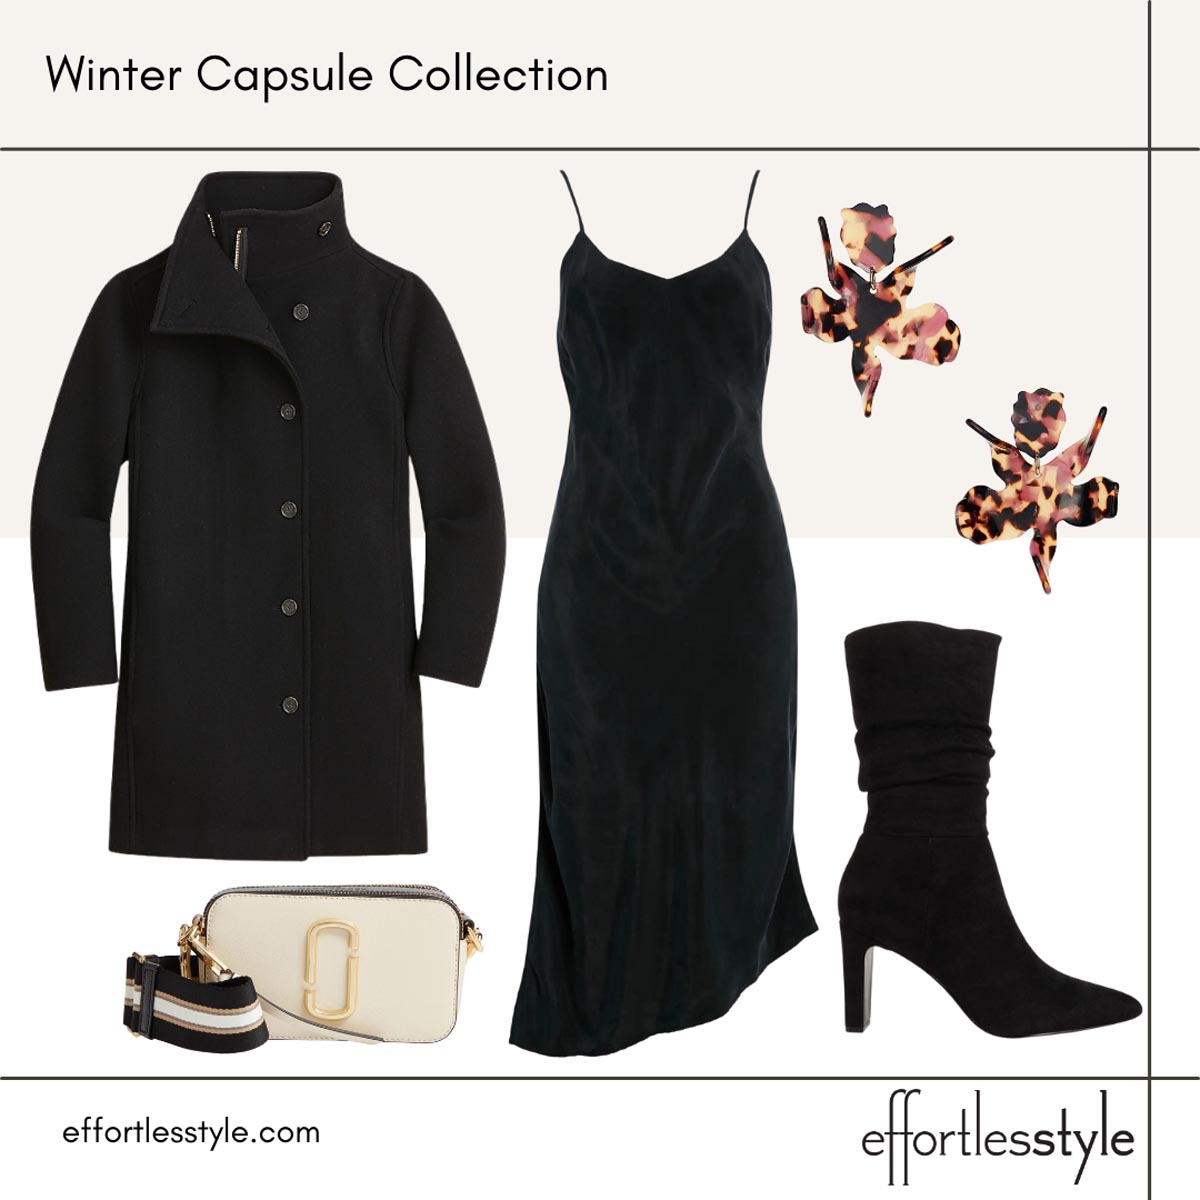 Women's Winter Capsule Wardrobe Midi Slip Dress Looks How to Wear